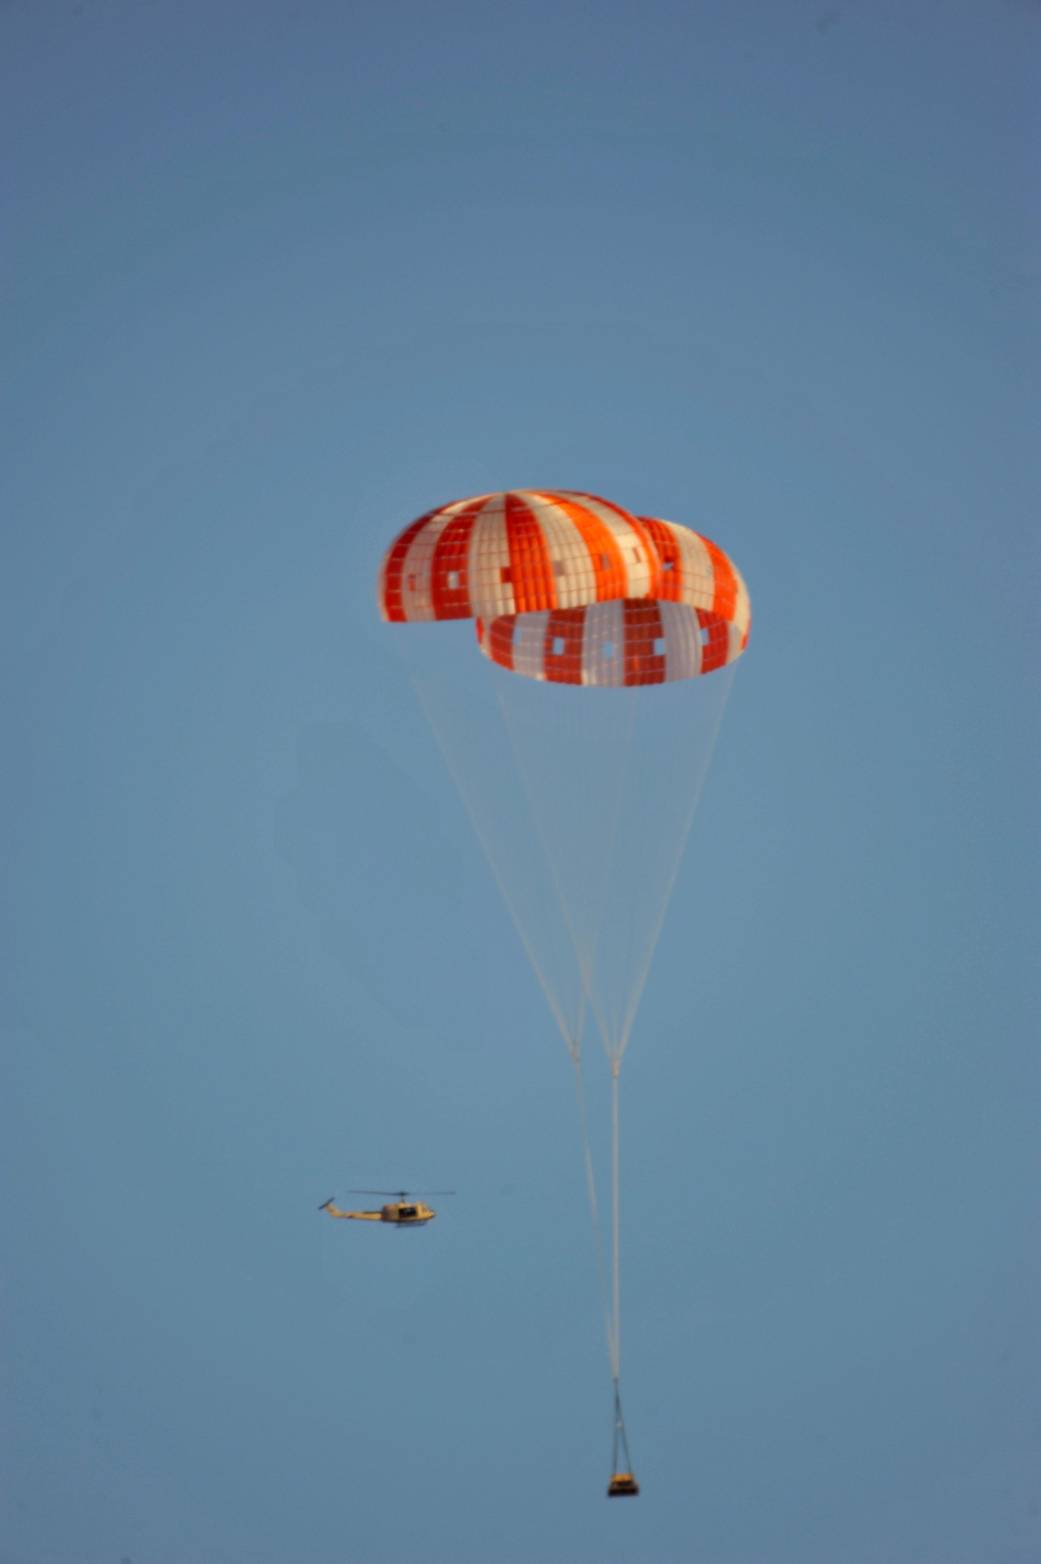 Orion Parachute Test, Sept. 24, 2010